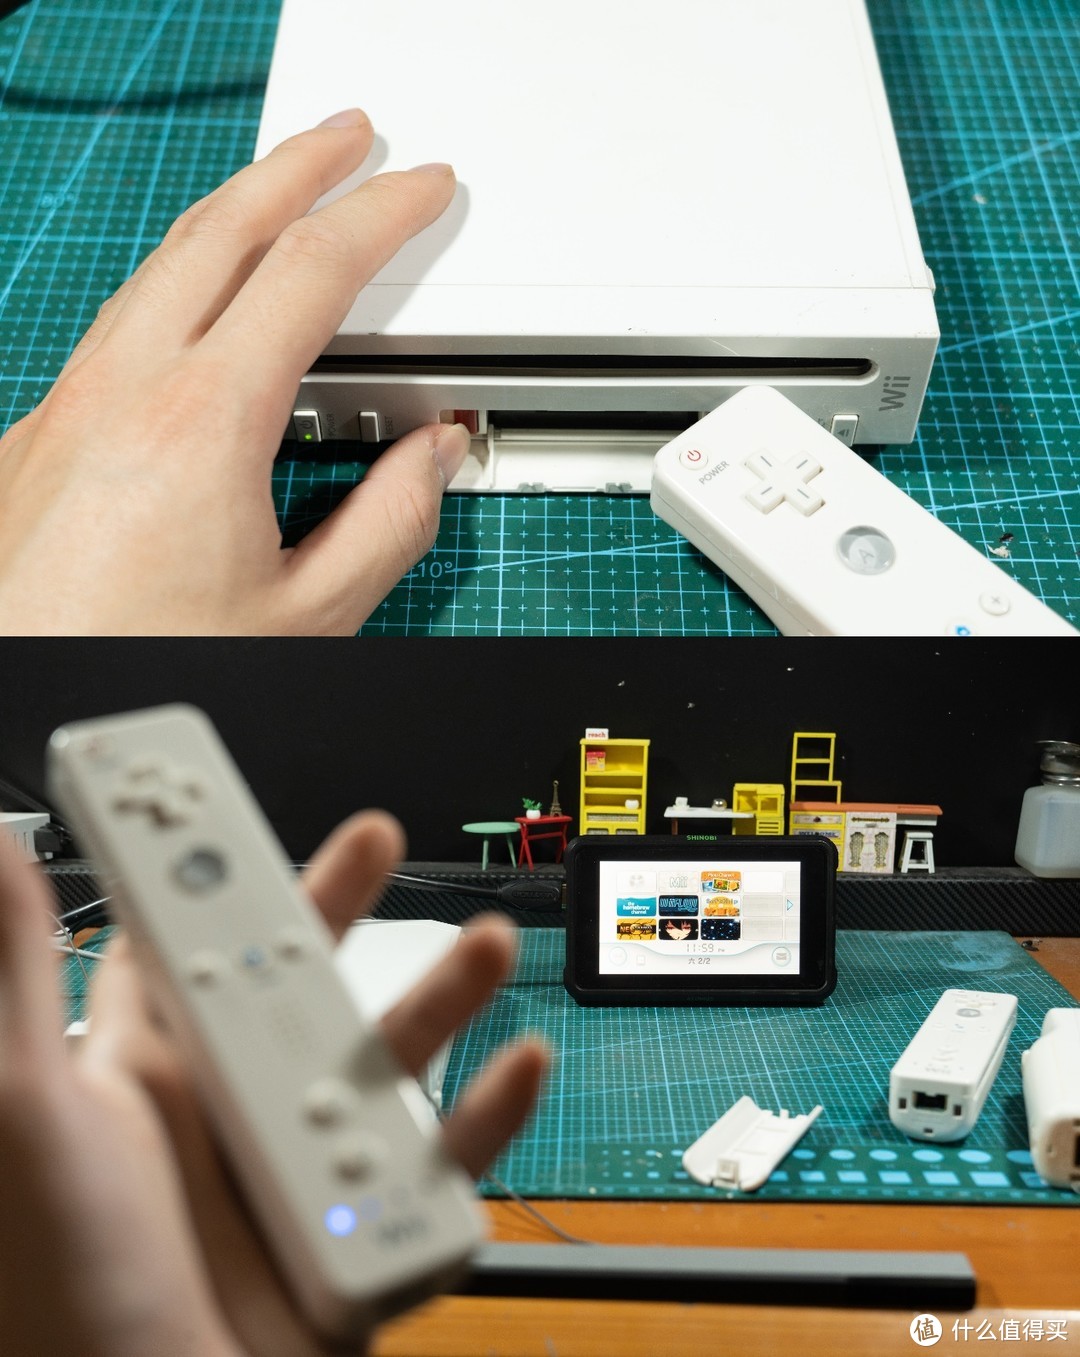 超低价收到三支Wii手柄，取一只来改装